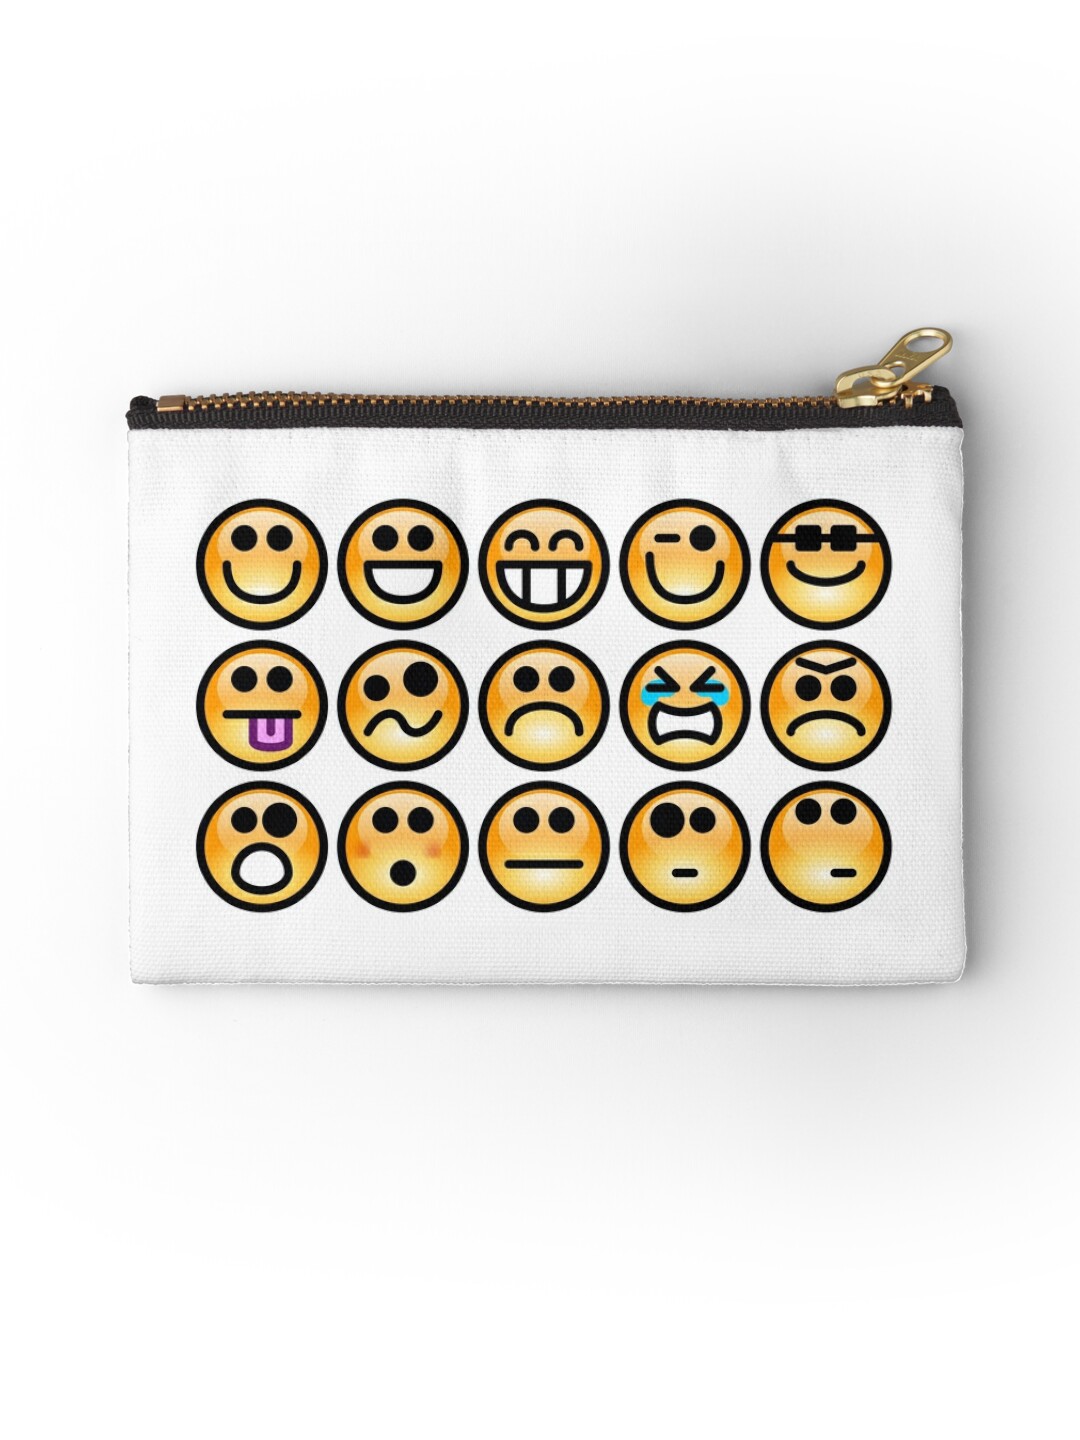 Emoji Emoticon Studio Pouches By Edleon Redbubble